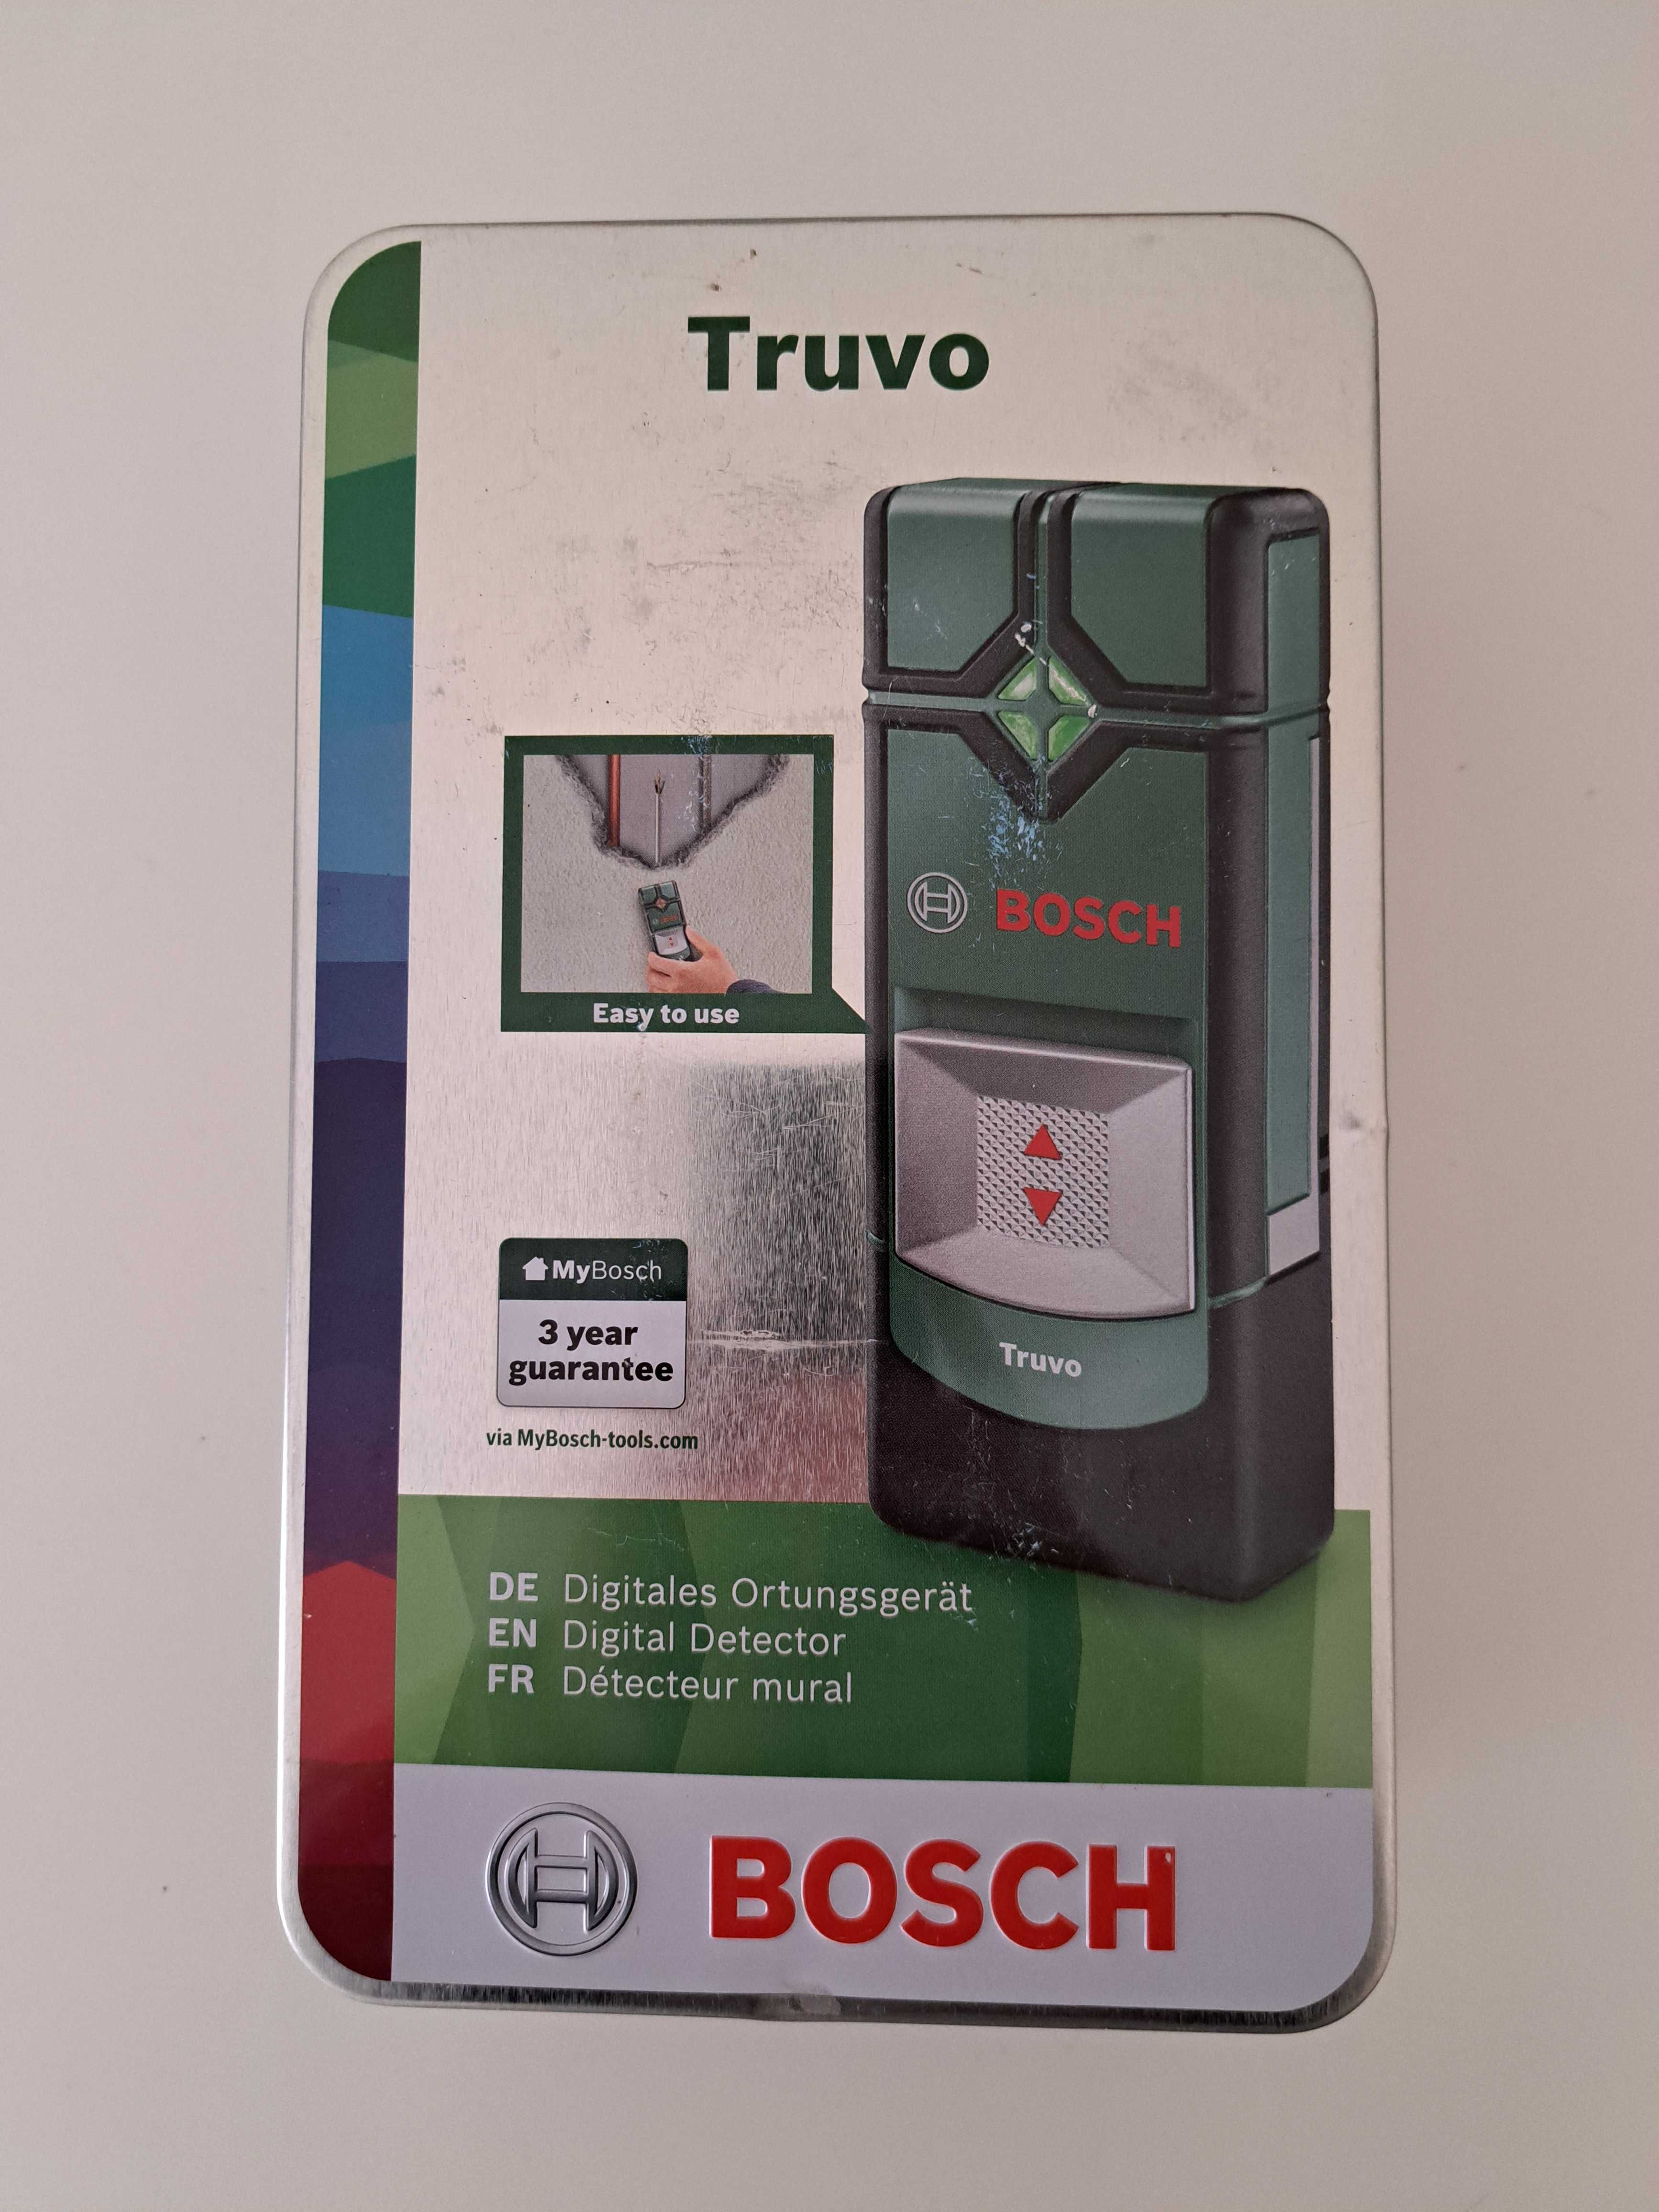 Multidetetor digital BOSH Truvo Novo